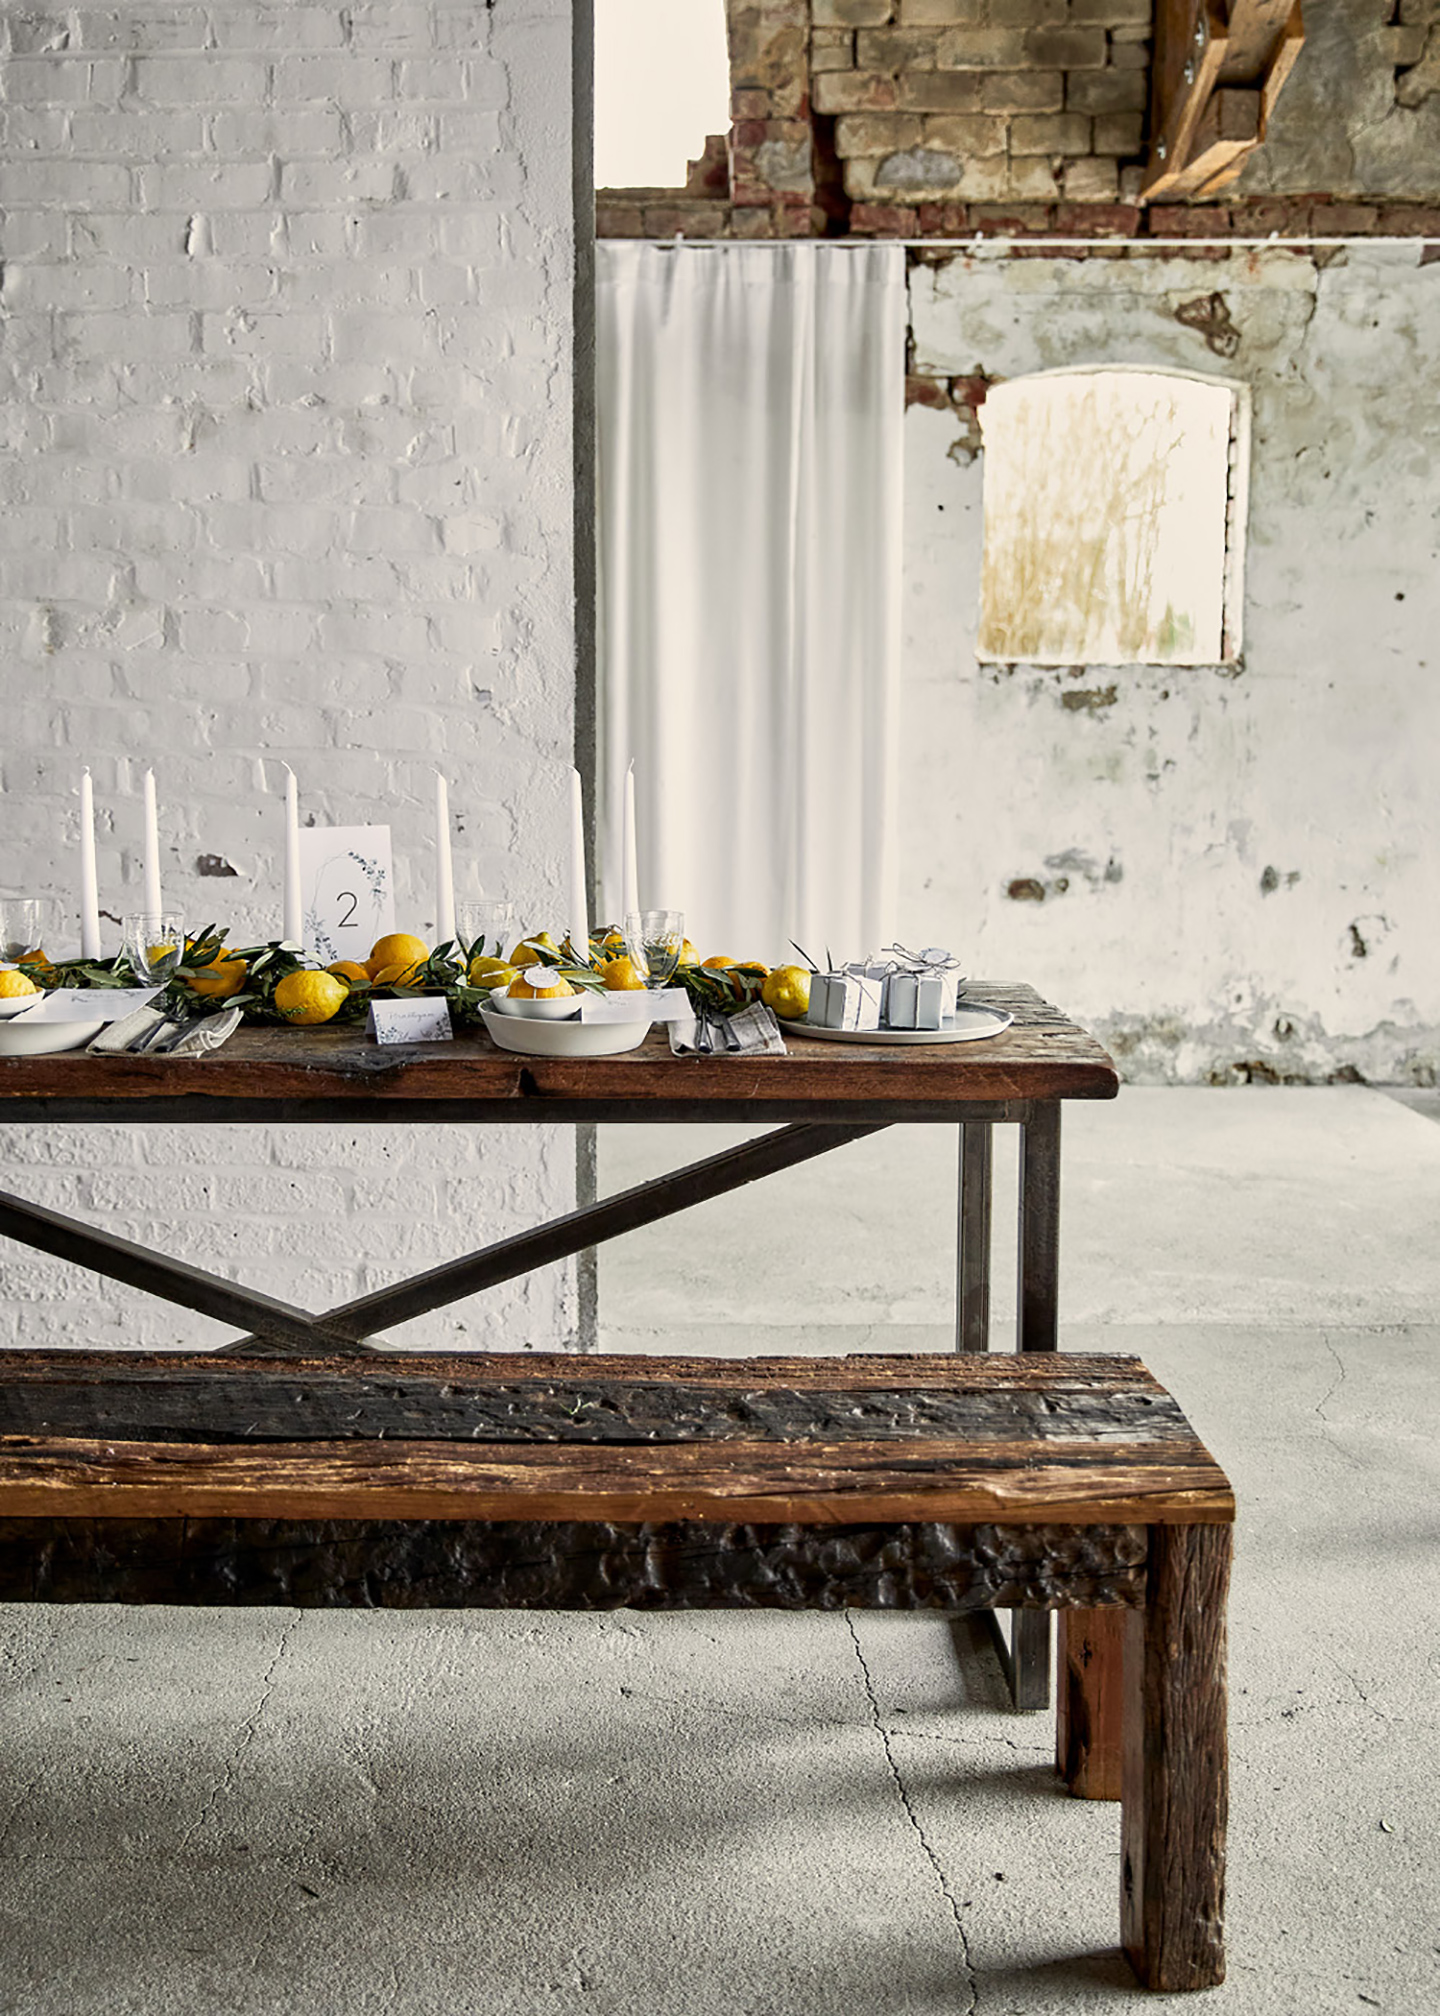 Rustikale Holzbank mit dazu passendem Tisch, dekoriert im schlichten Look mit Zitronen als Haupt-Dekoelement. Die Location ist im Shabby-Look gehalten.